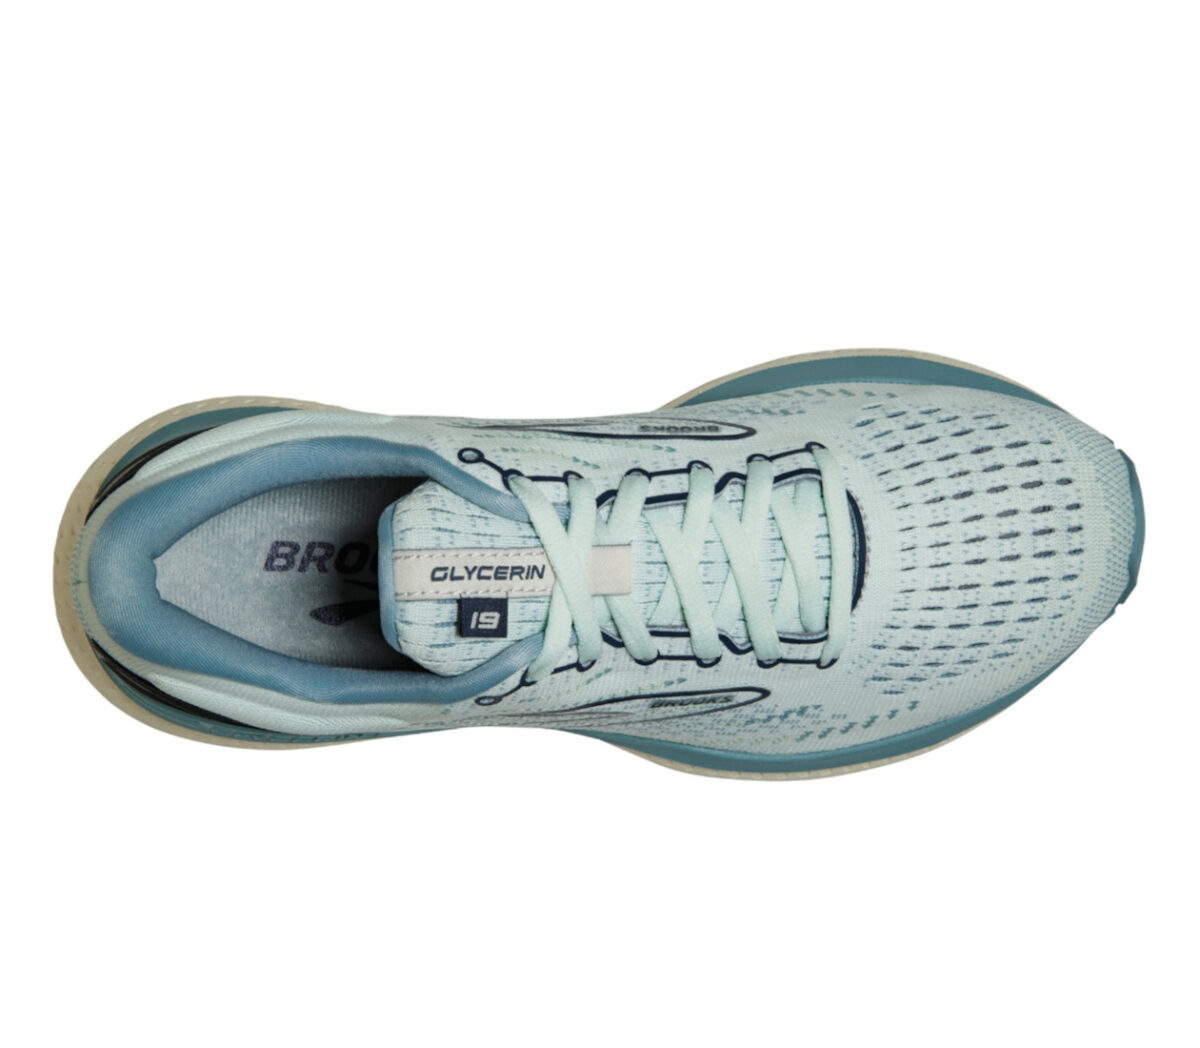 tomaia scarpa da running brooks glycerin 19 donna azzurra